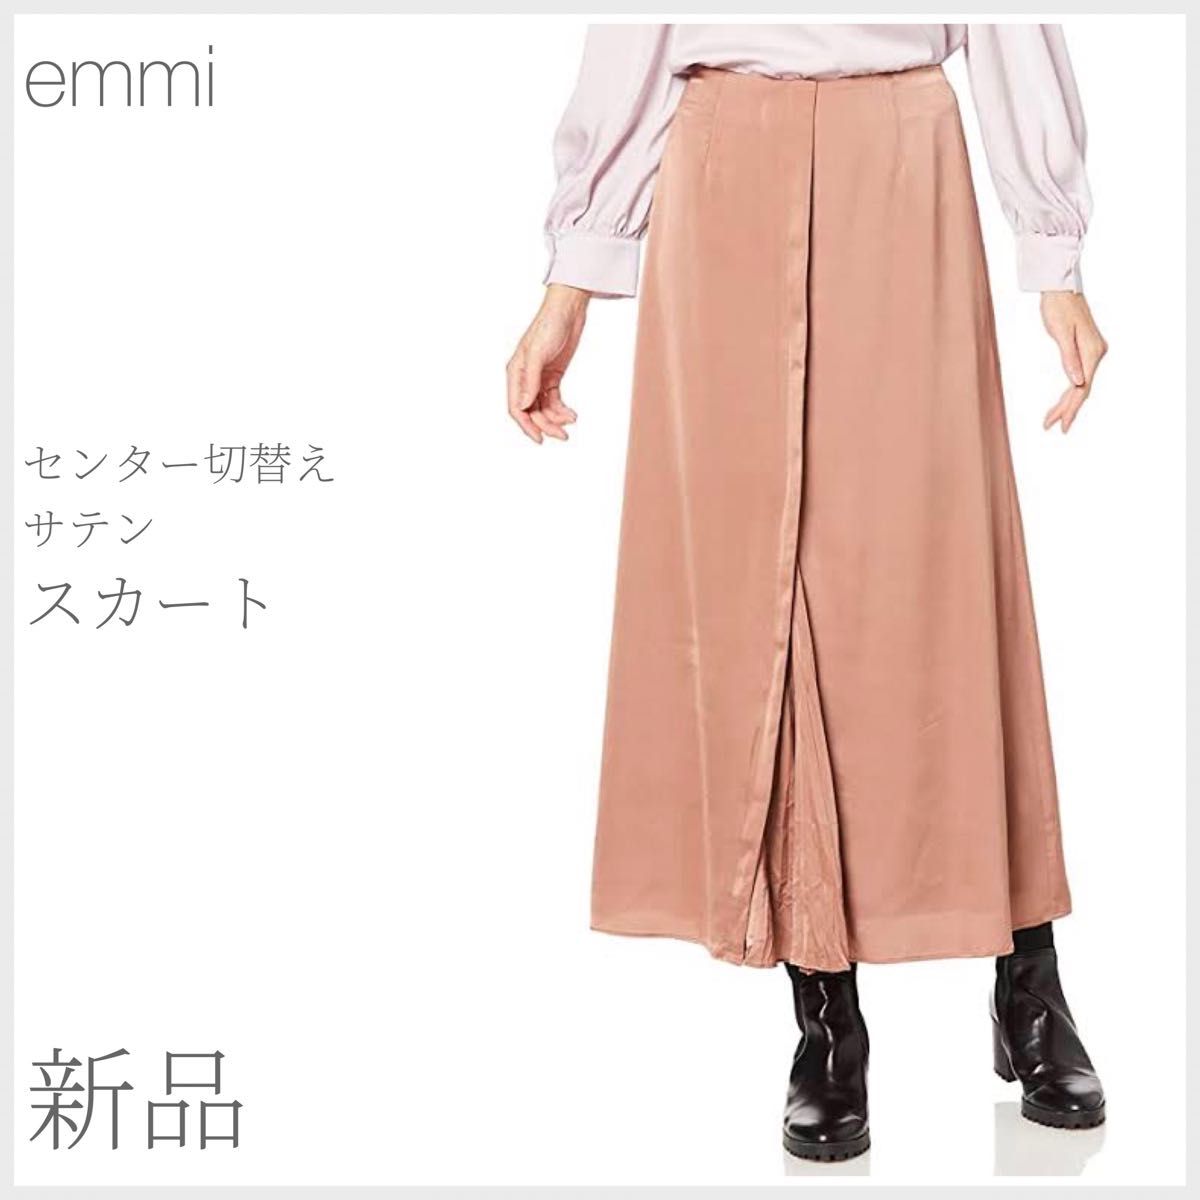 新品 センター切替えサテンスカート emmi atelier エミアトリエ (2130